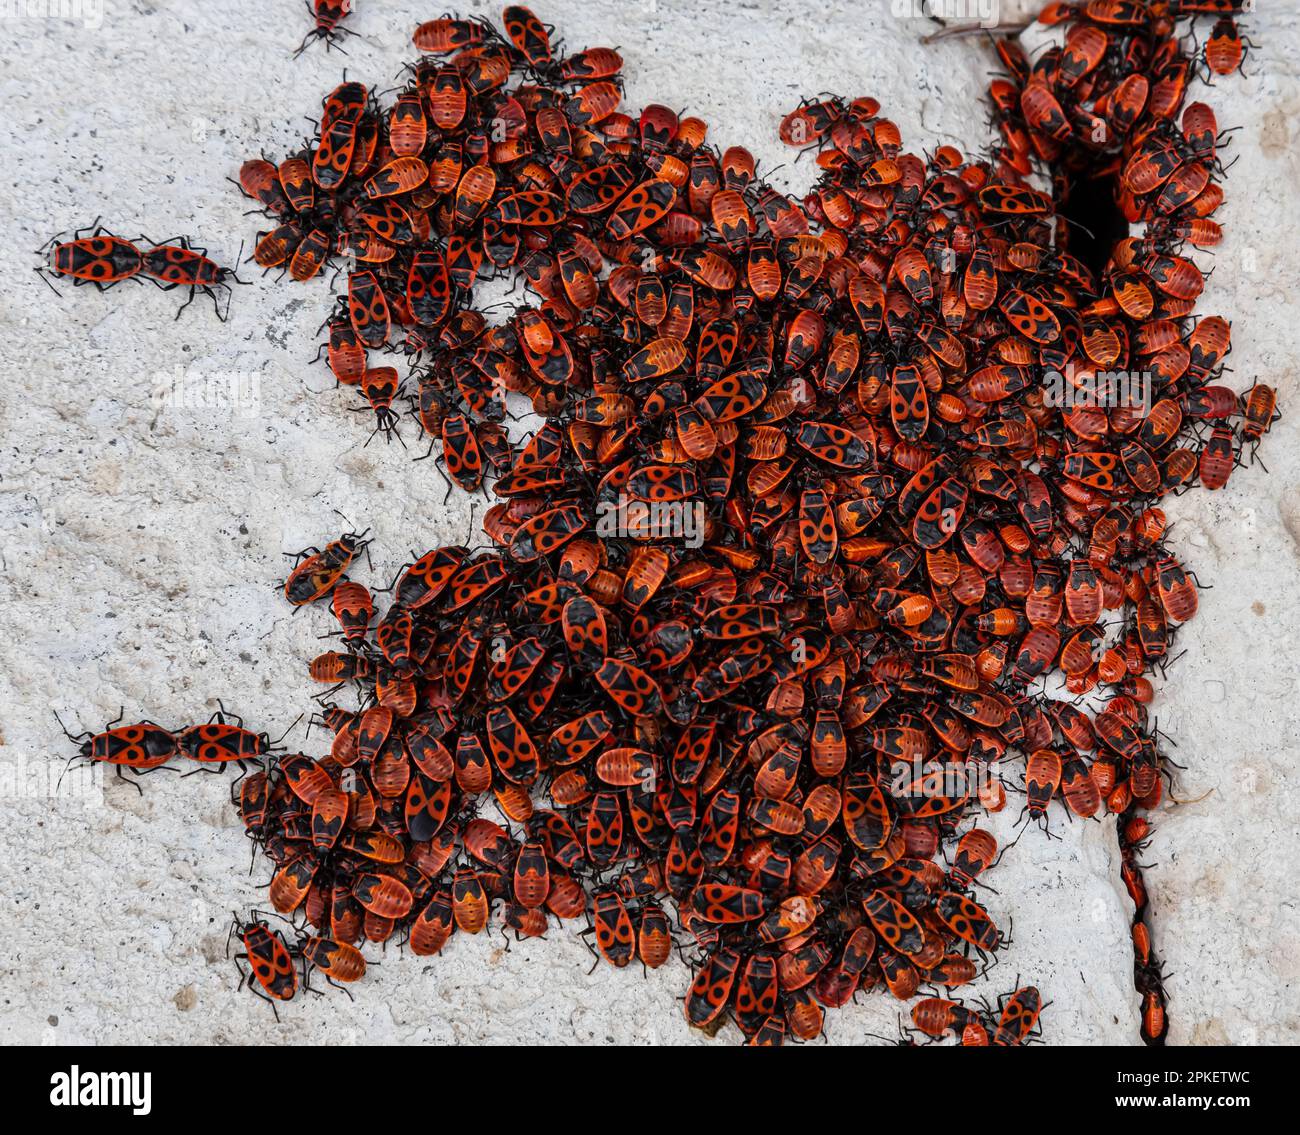 grande colonie de coléoptères rouges et noirs sur une pierre Banque D'Images